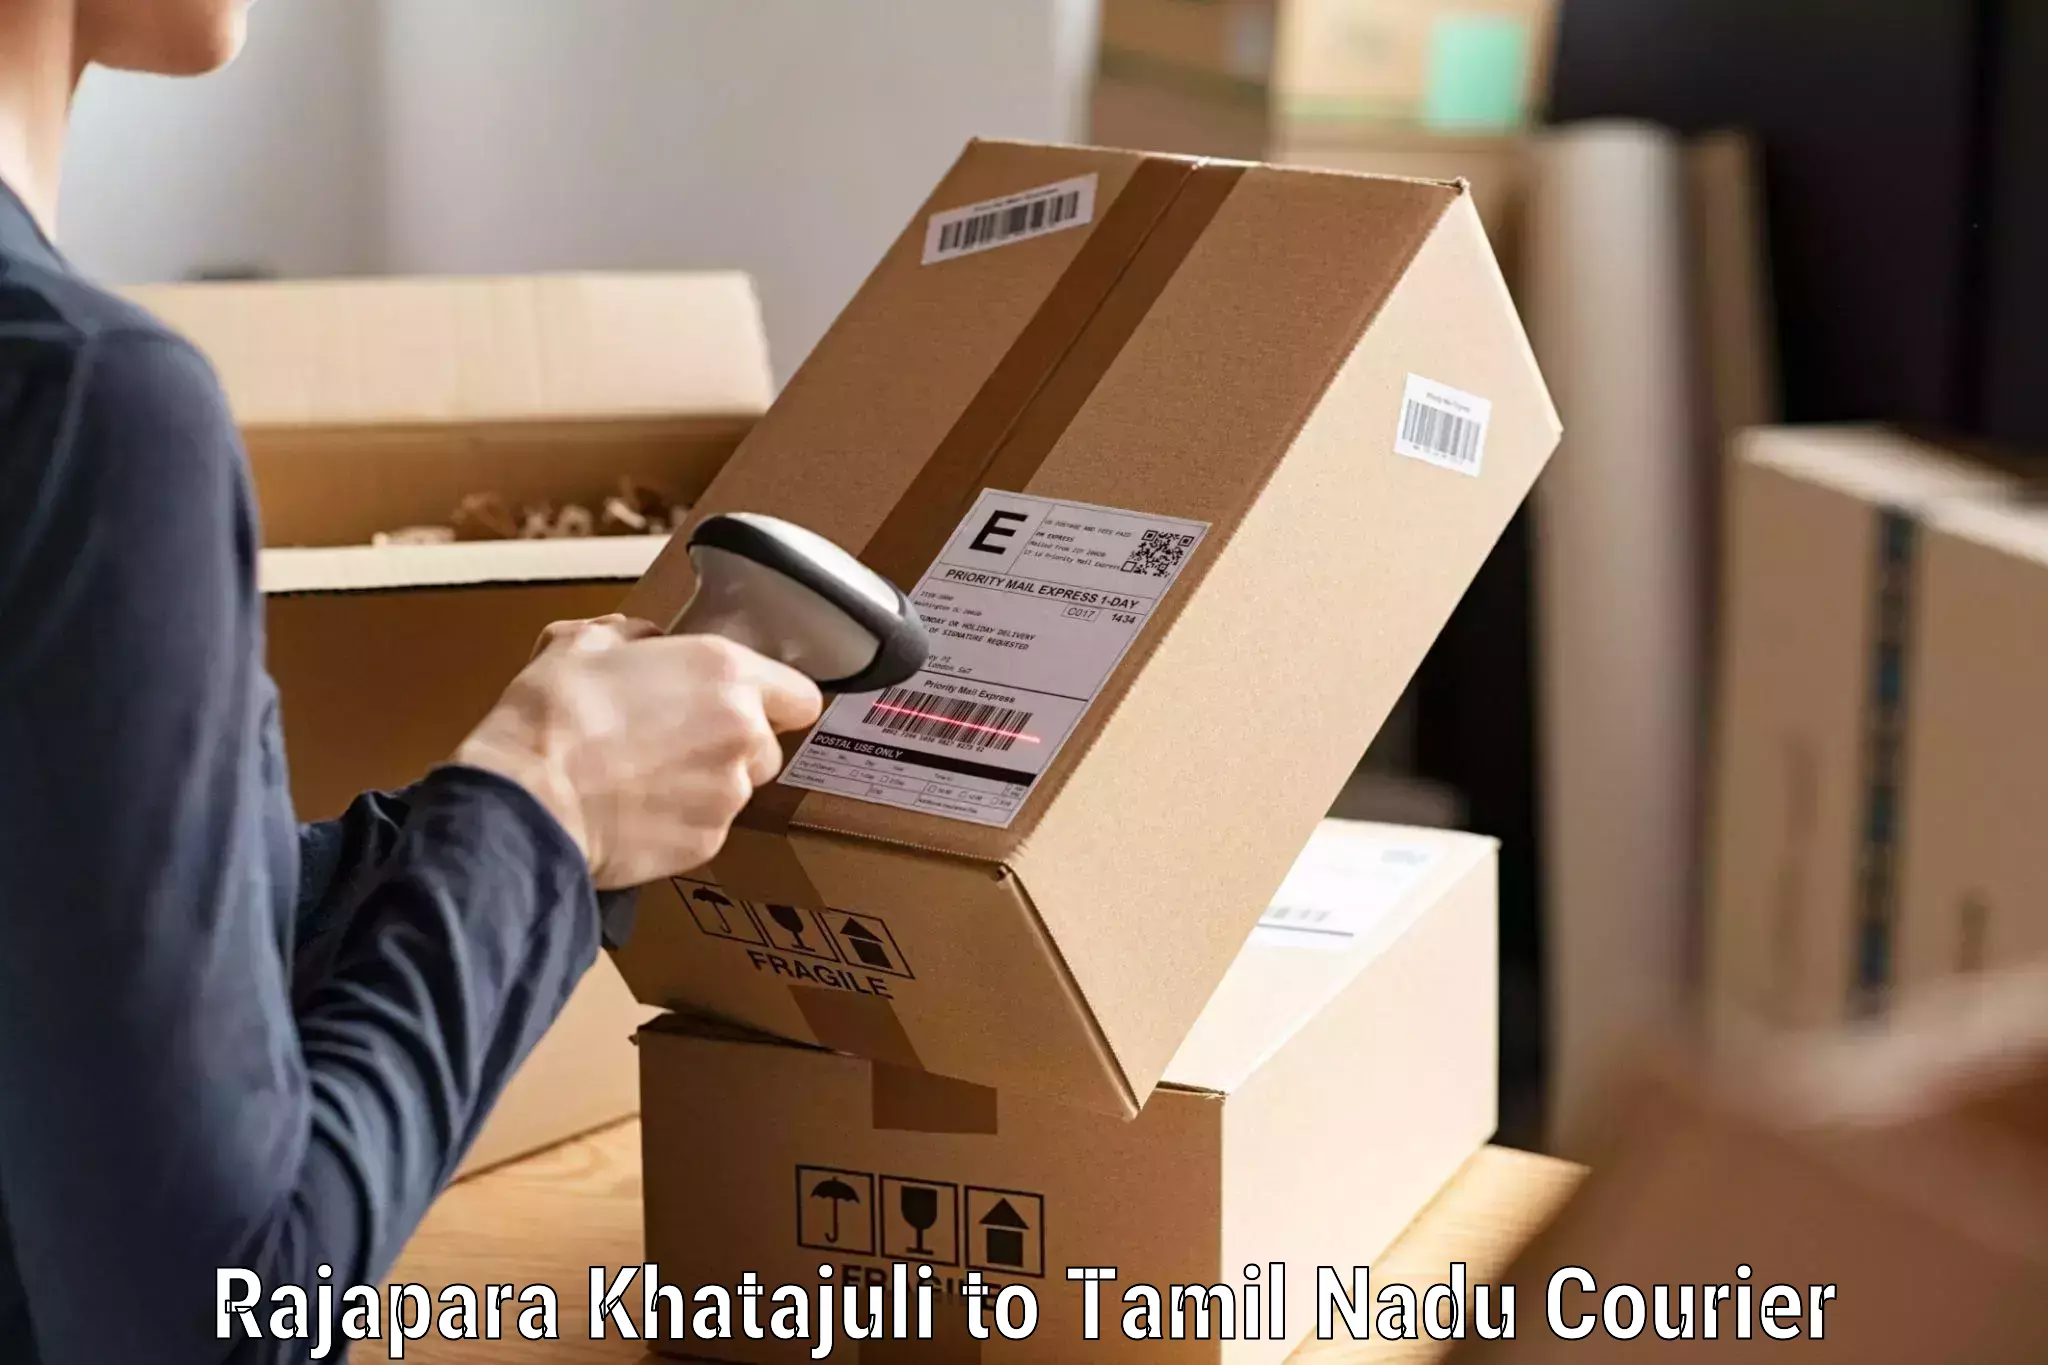 Seamless shipping service Rajapara Khatajuli to The Gandhigram Rural Institute